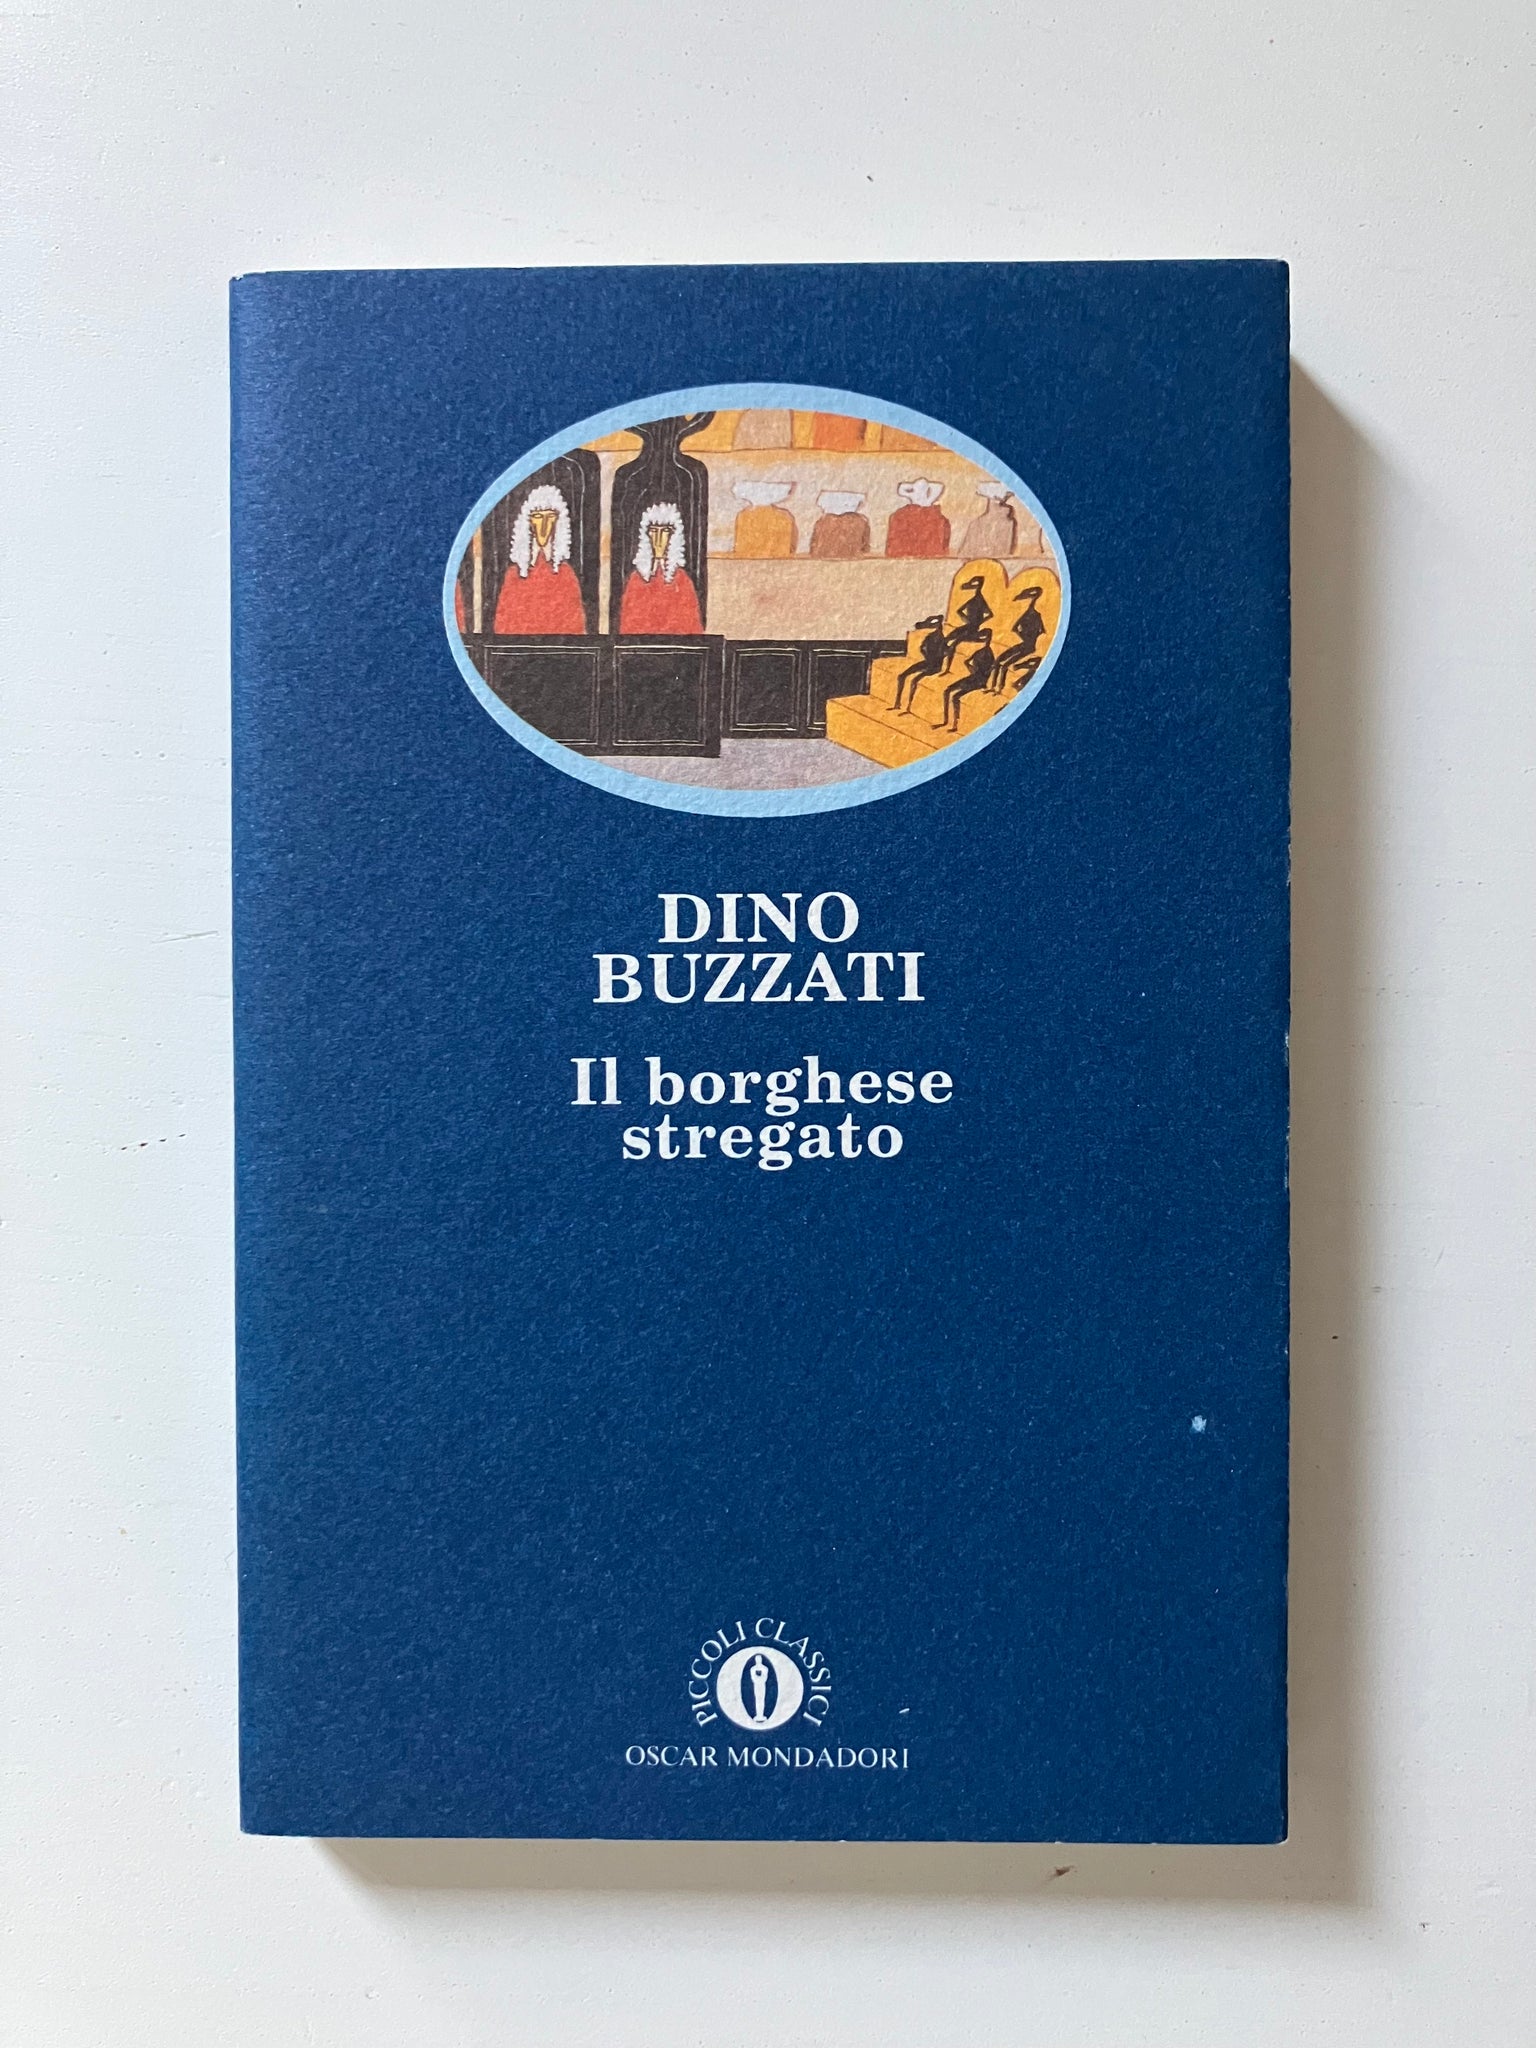 Dino Buzzati - Il borghese stregato